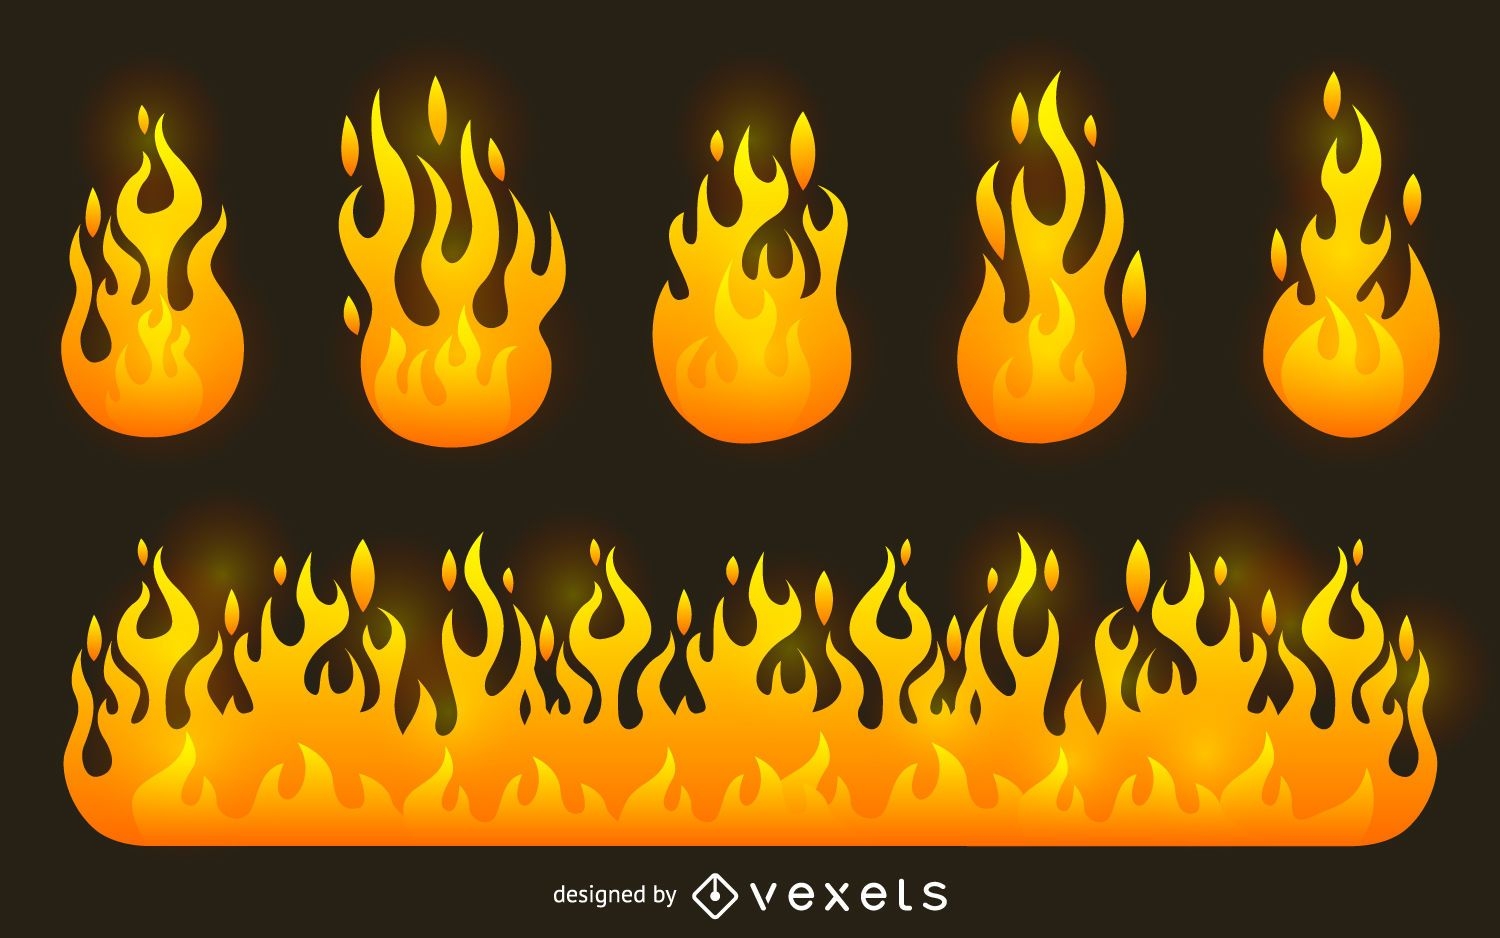 Fire flame illustration set